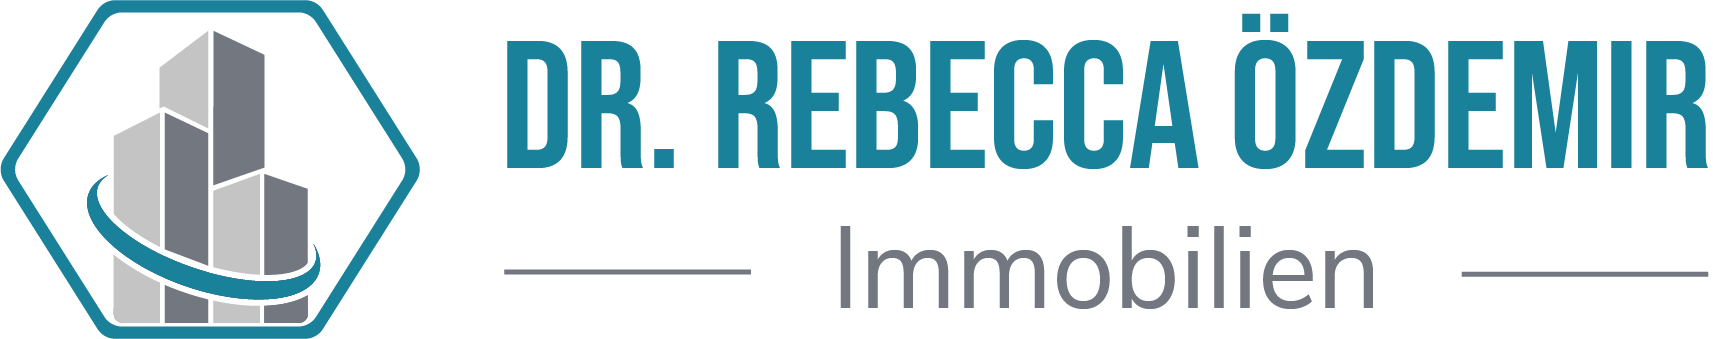 Logo Dr. Rebecca Özdemir Immobilien